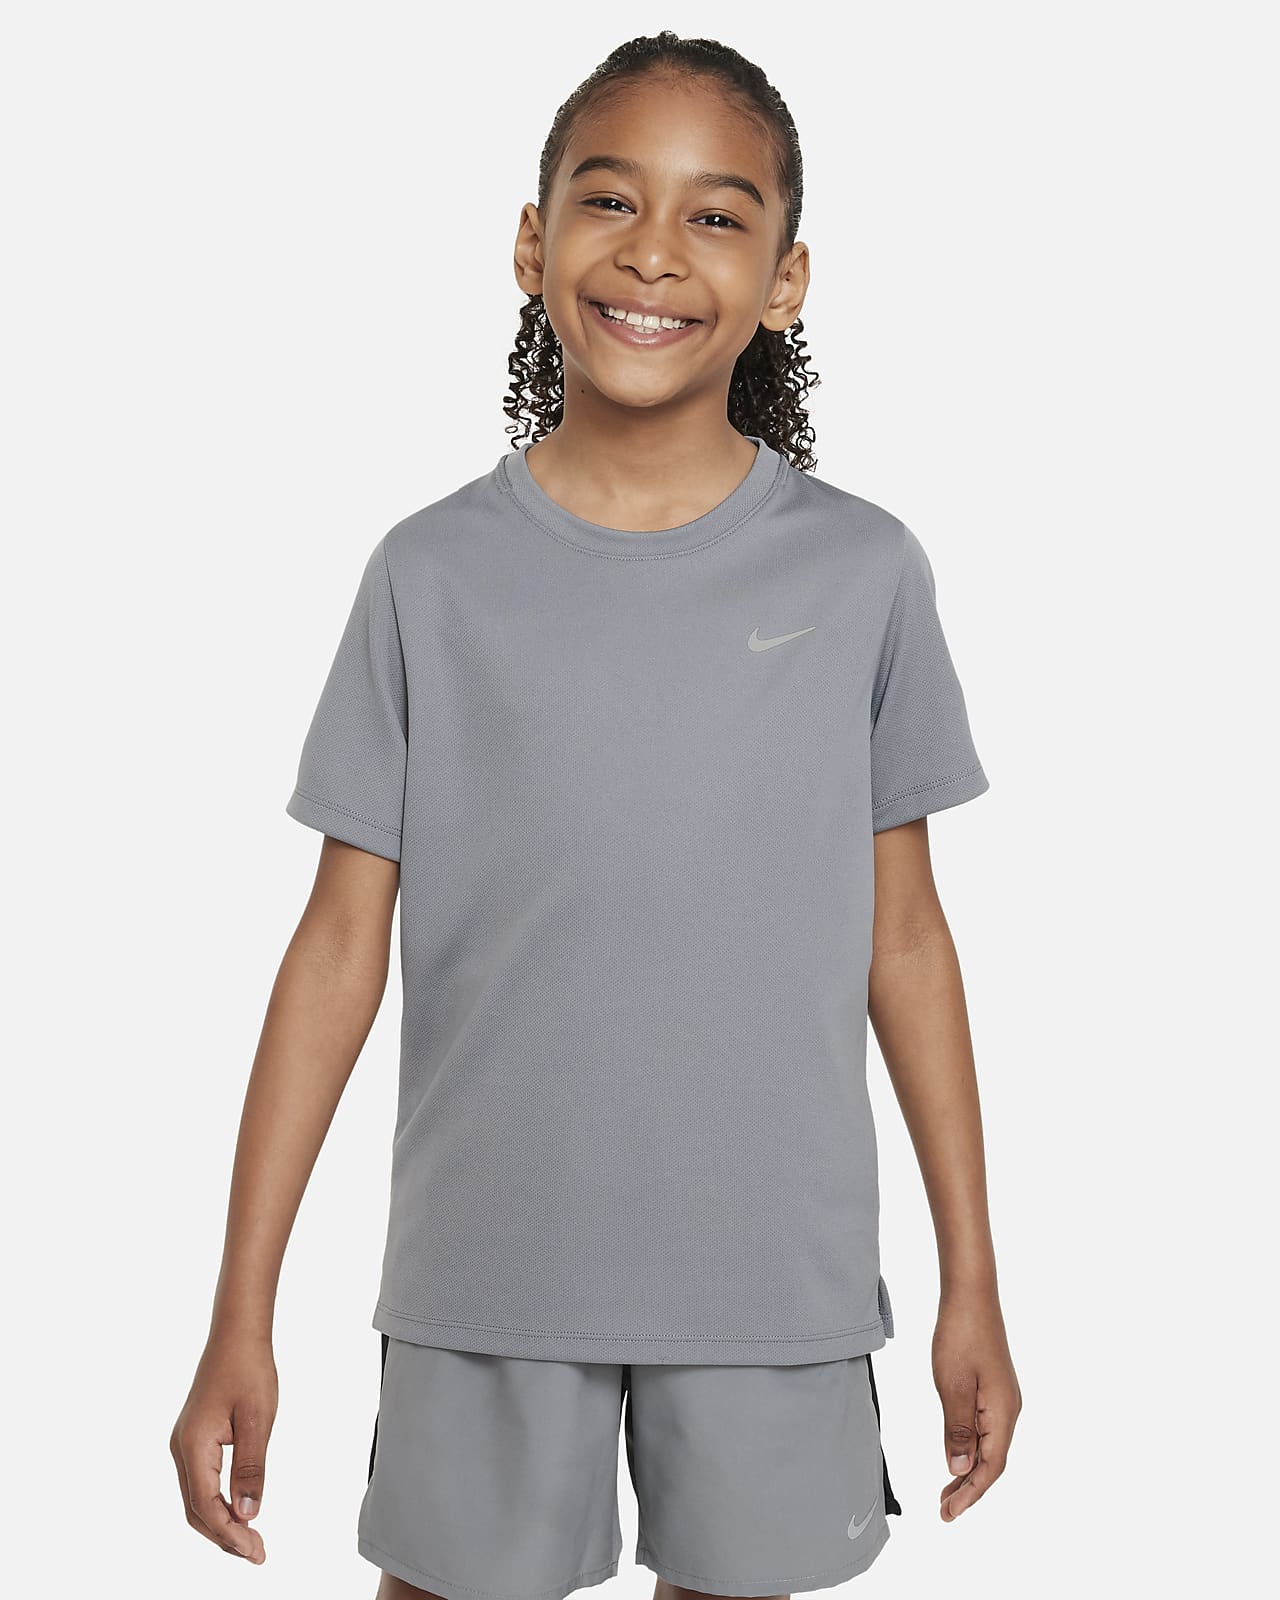 เสื้อเทรนนิ่งแขนสั้นเด็กโต Nike Dri-FIT Miler (ชาย)